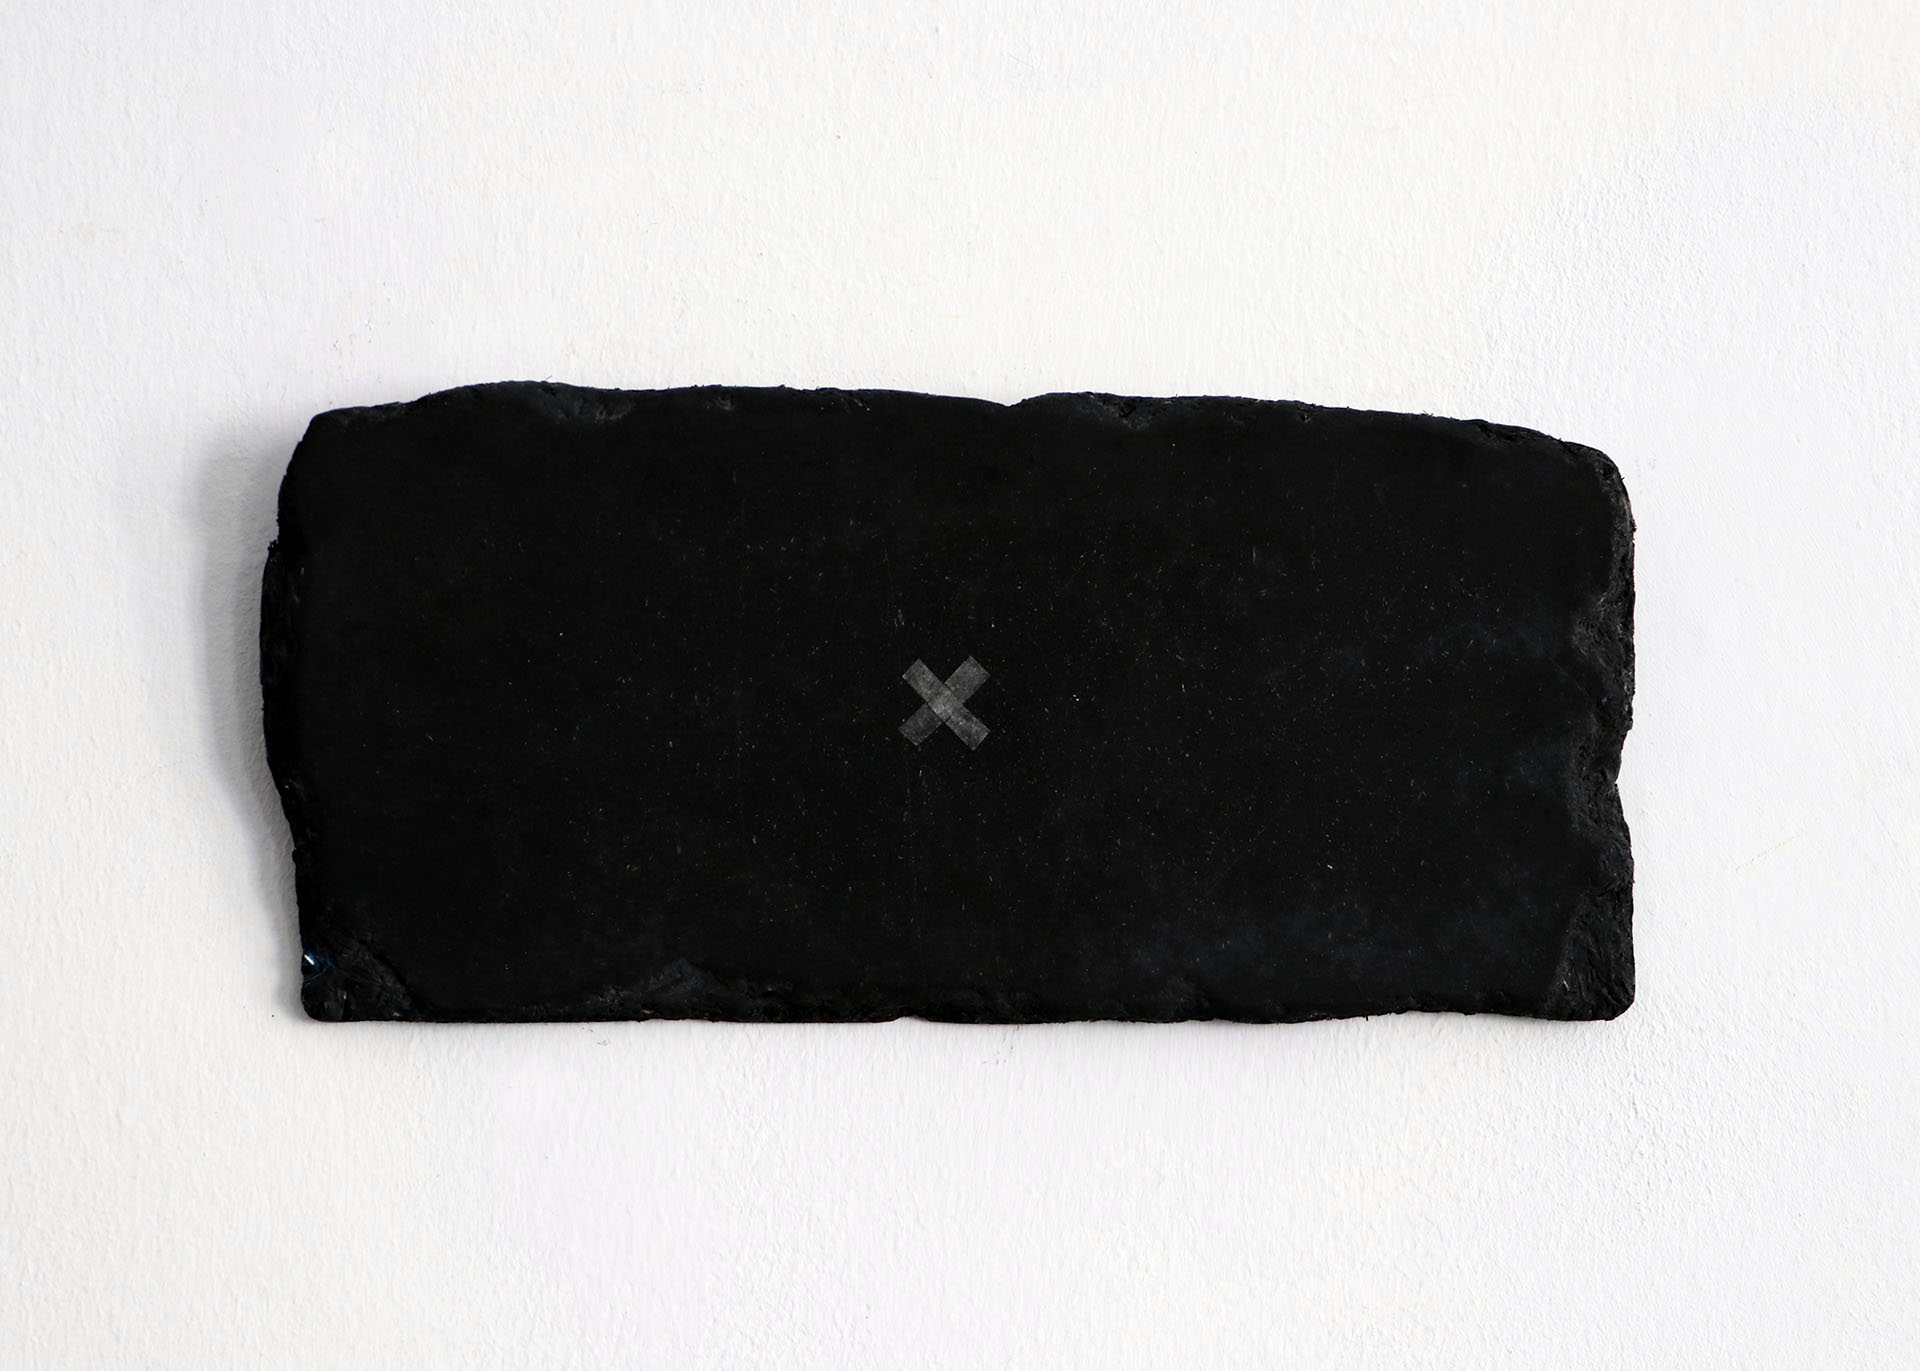 Zdjęcie przedstawia ciemną, drewnianą, prostokątną płytkę z naniesionym na nią niewielkim znakiem x, umieszczonym w jej środku